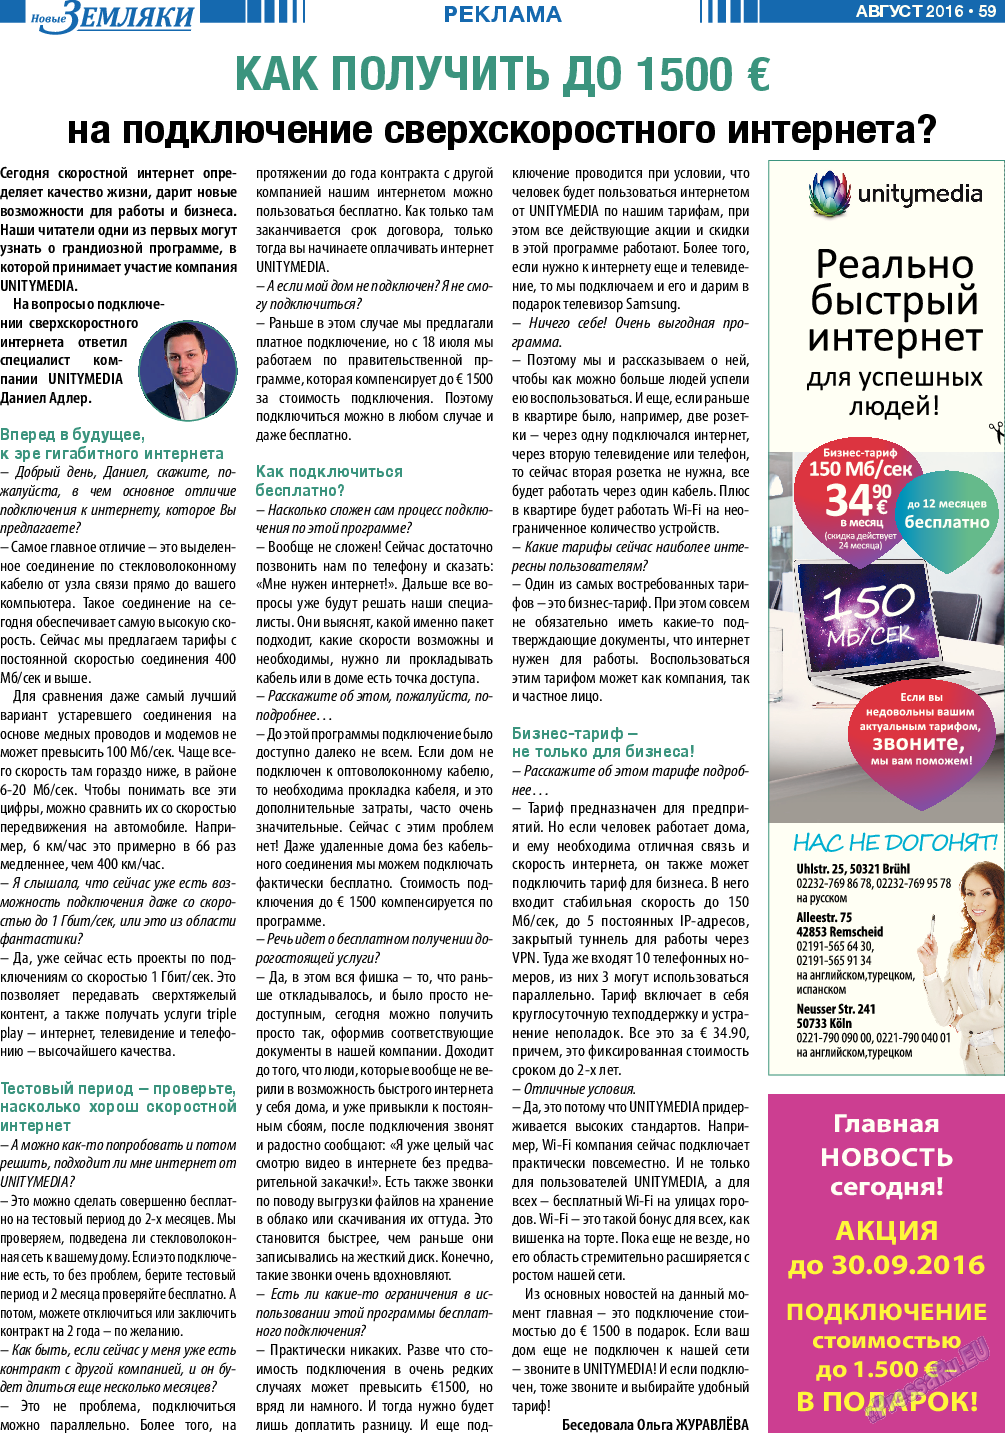 Новые Земляки, газета. 2016 №8 стр.59